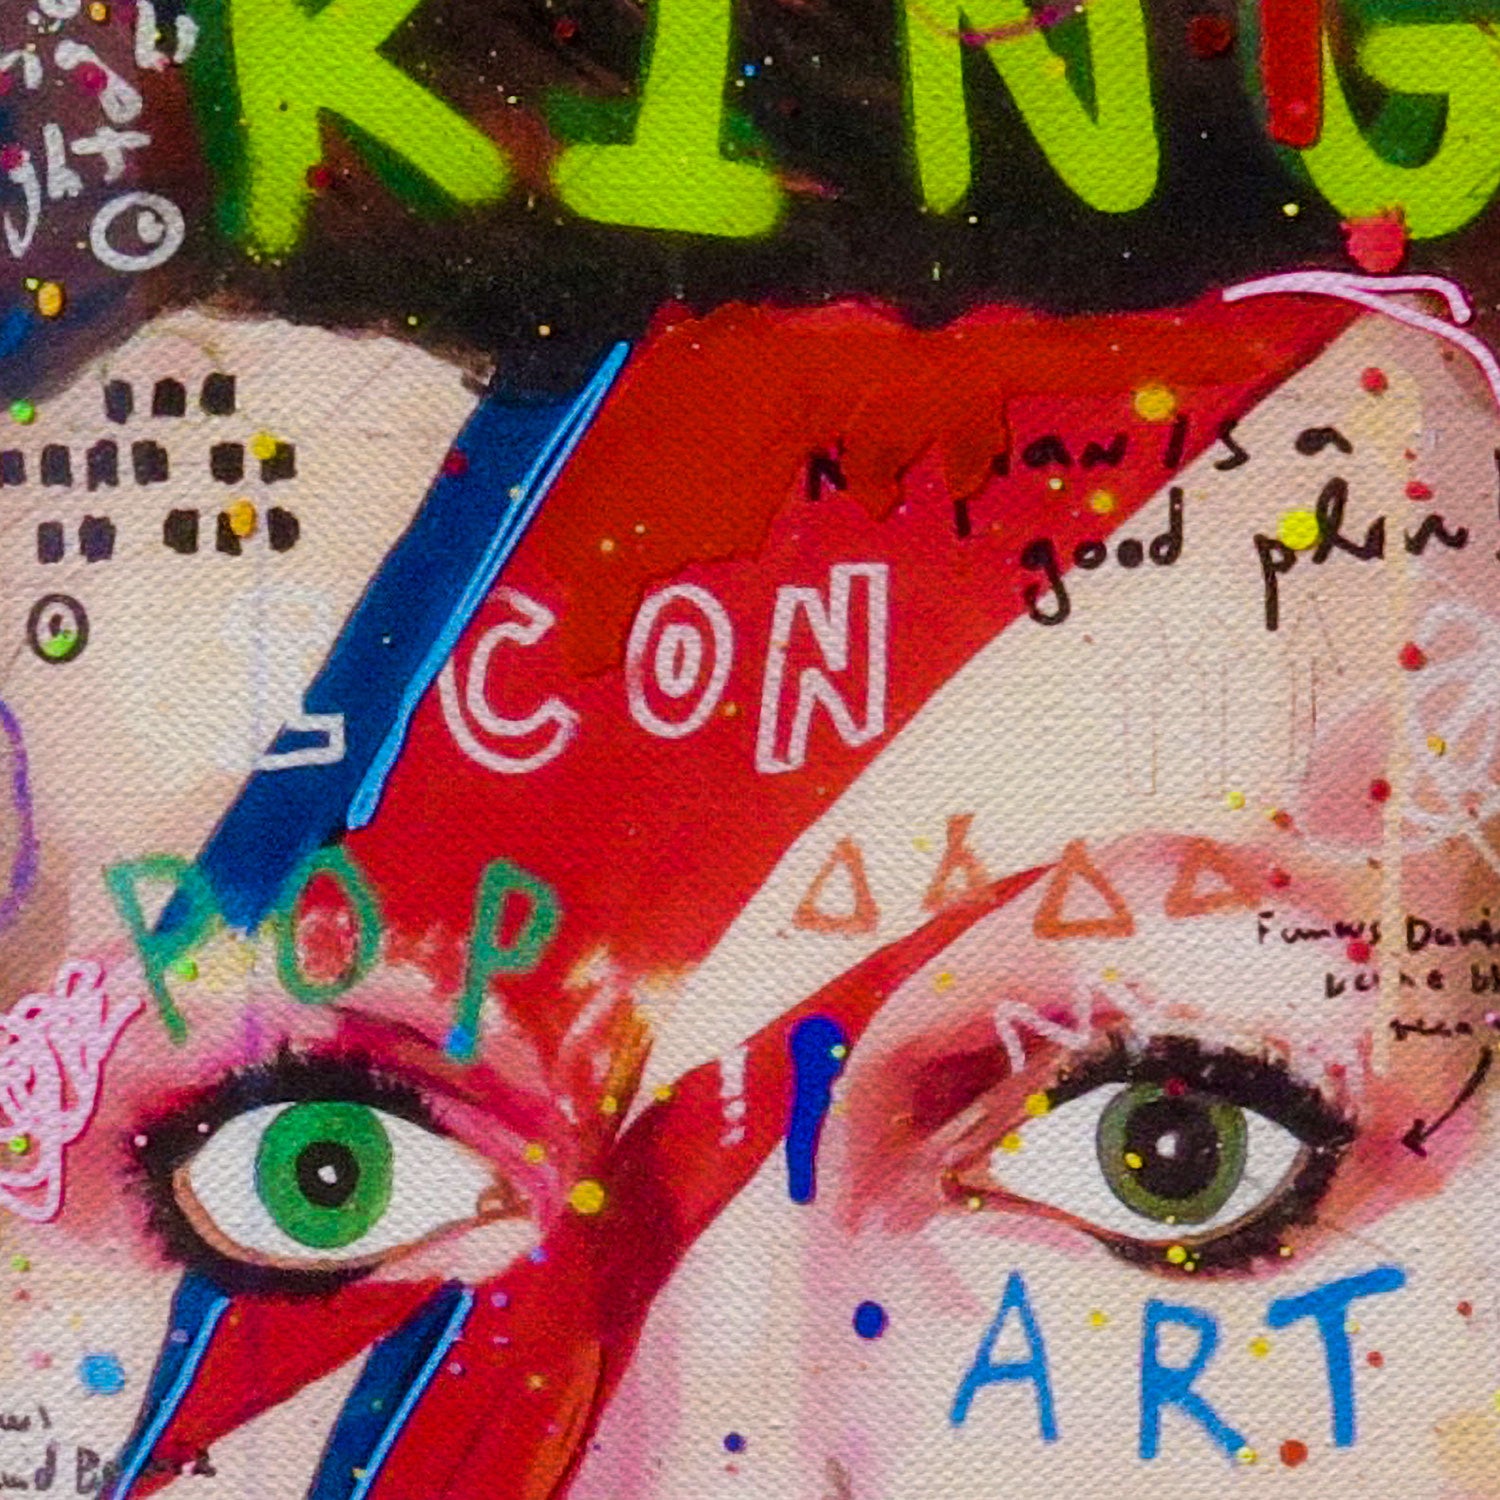 Bowie Rock King Street Canvas Wall Art